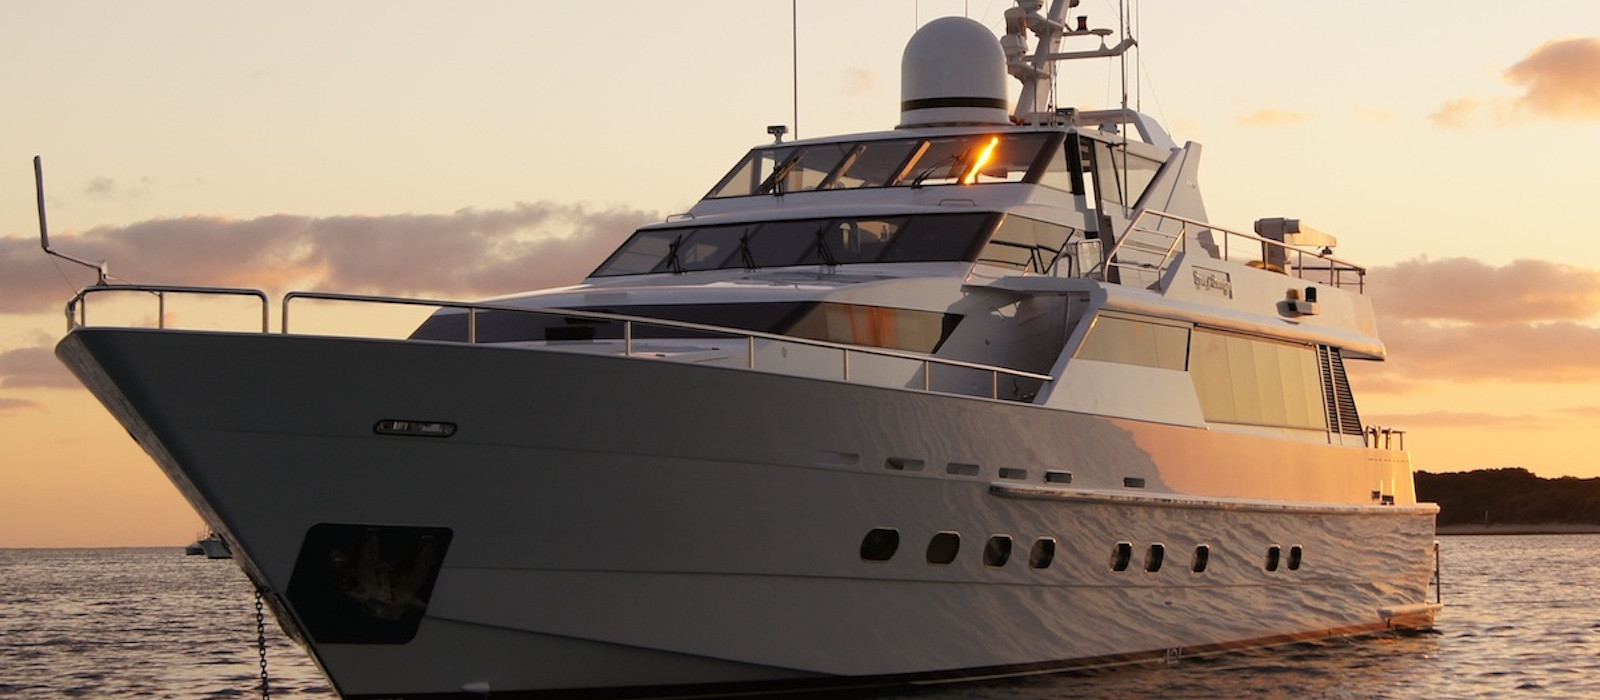 Oscar II superyacht hire as the sun sets